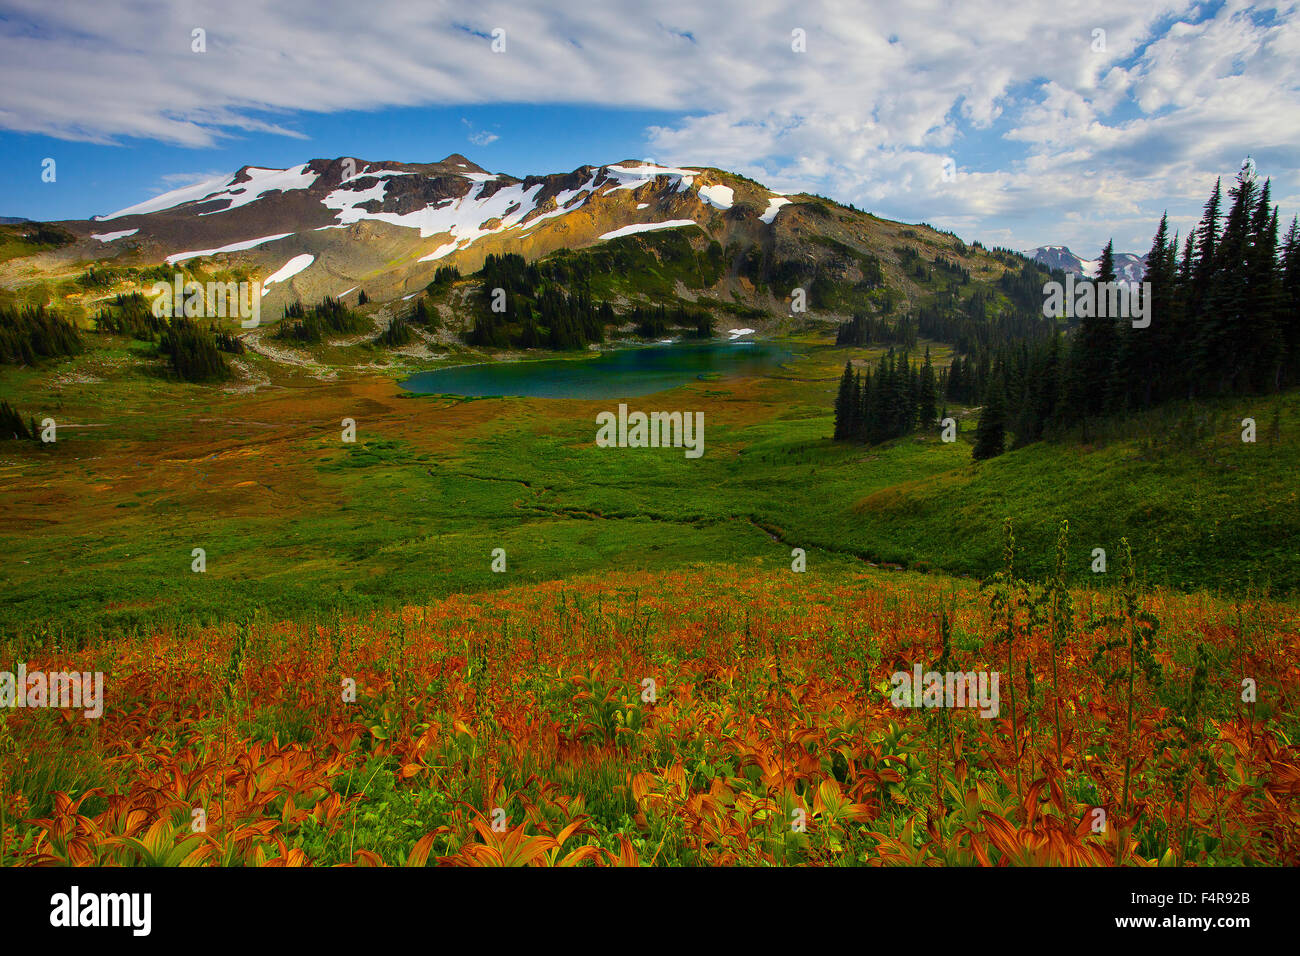 Canada, British Columbia, Mount Garibaldi, gigli selvatici, valley, molla, cielo blu, giglio, lago, fiori Foto Stock